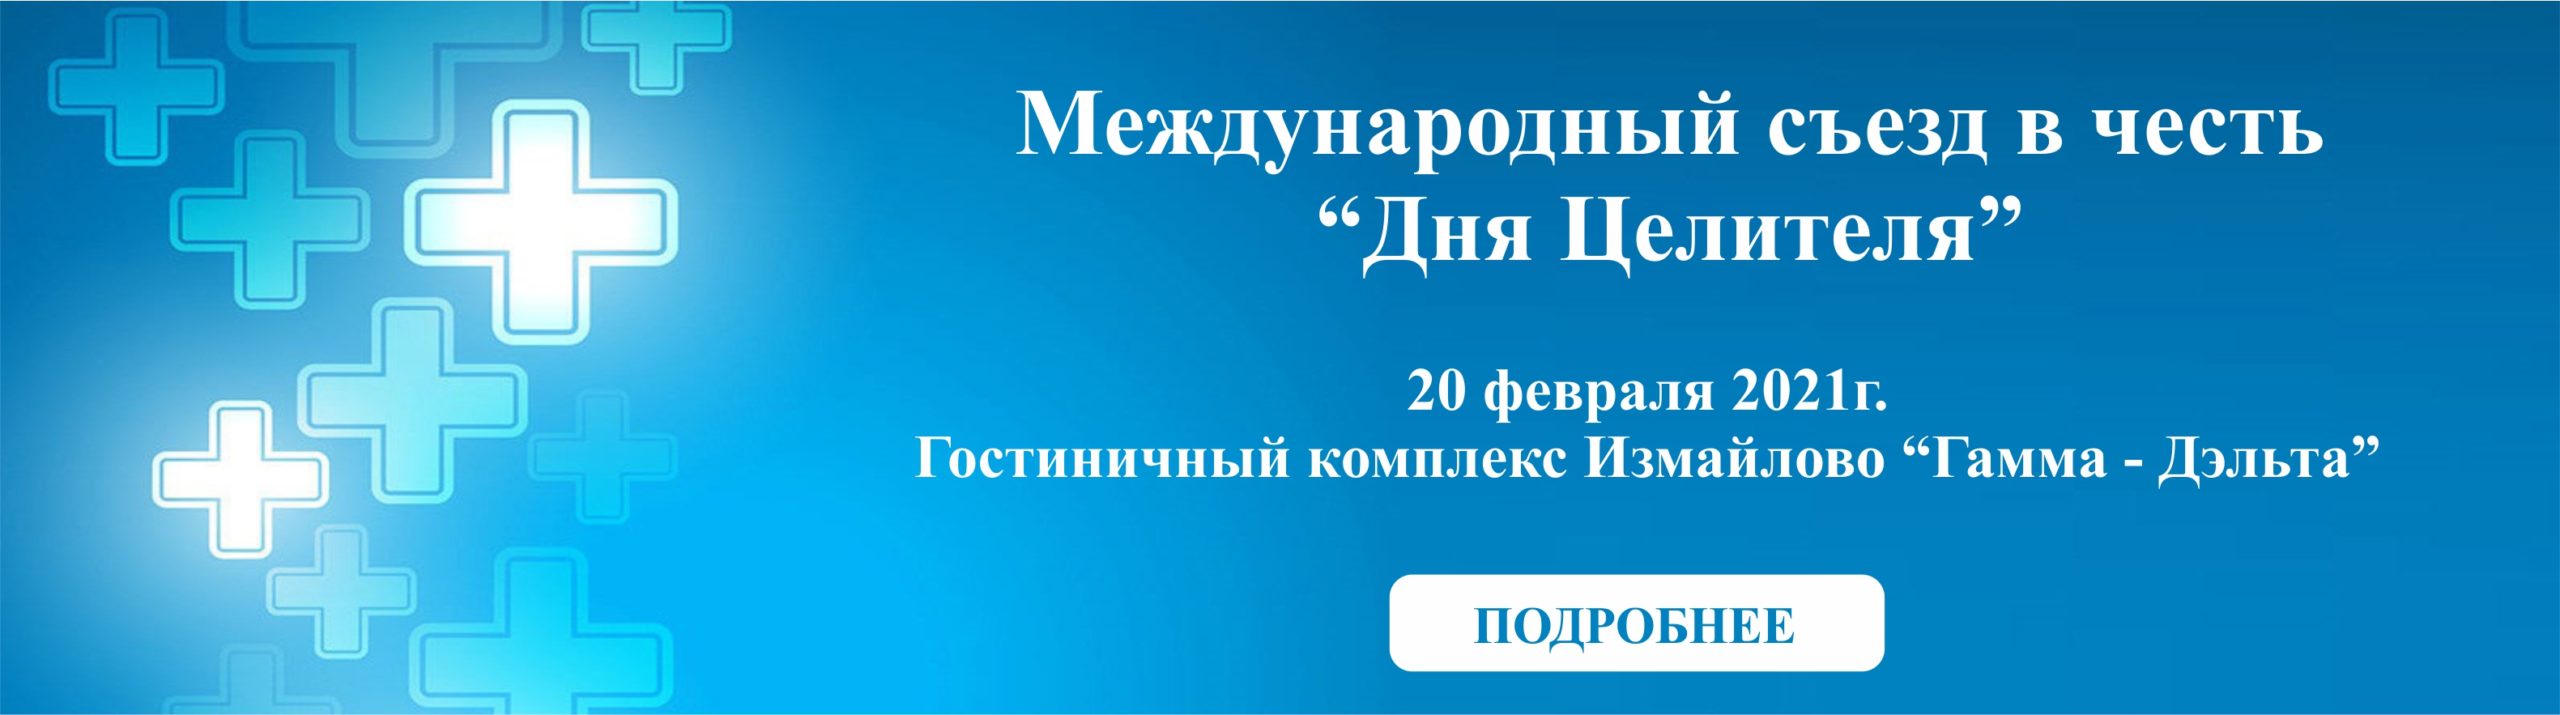 Сайта главная scaled - Международный съезд в честь "Дня Целителя"